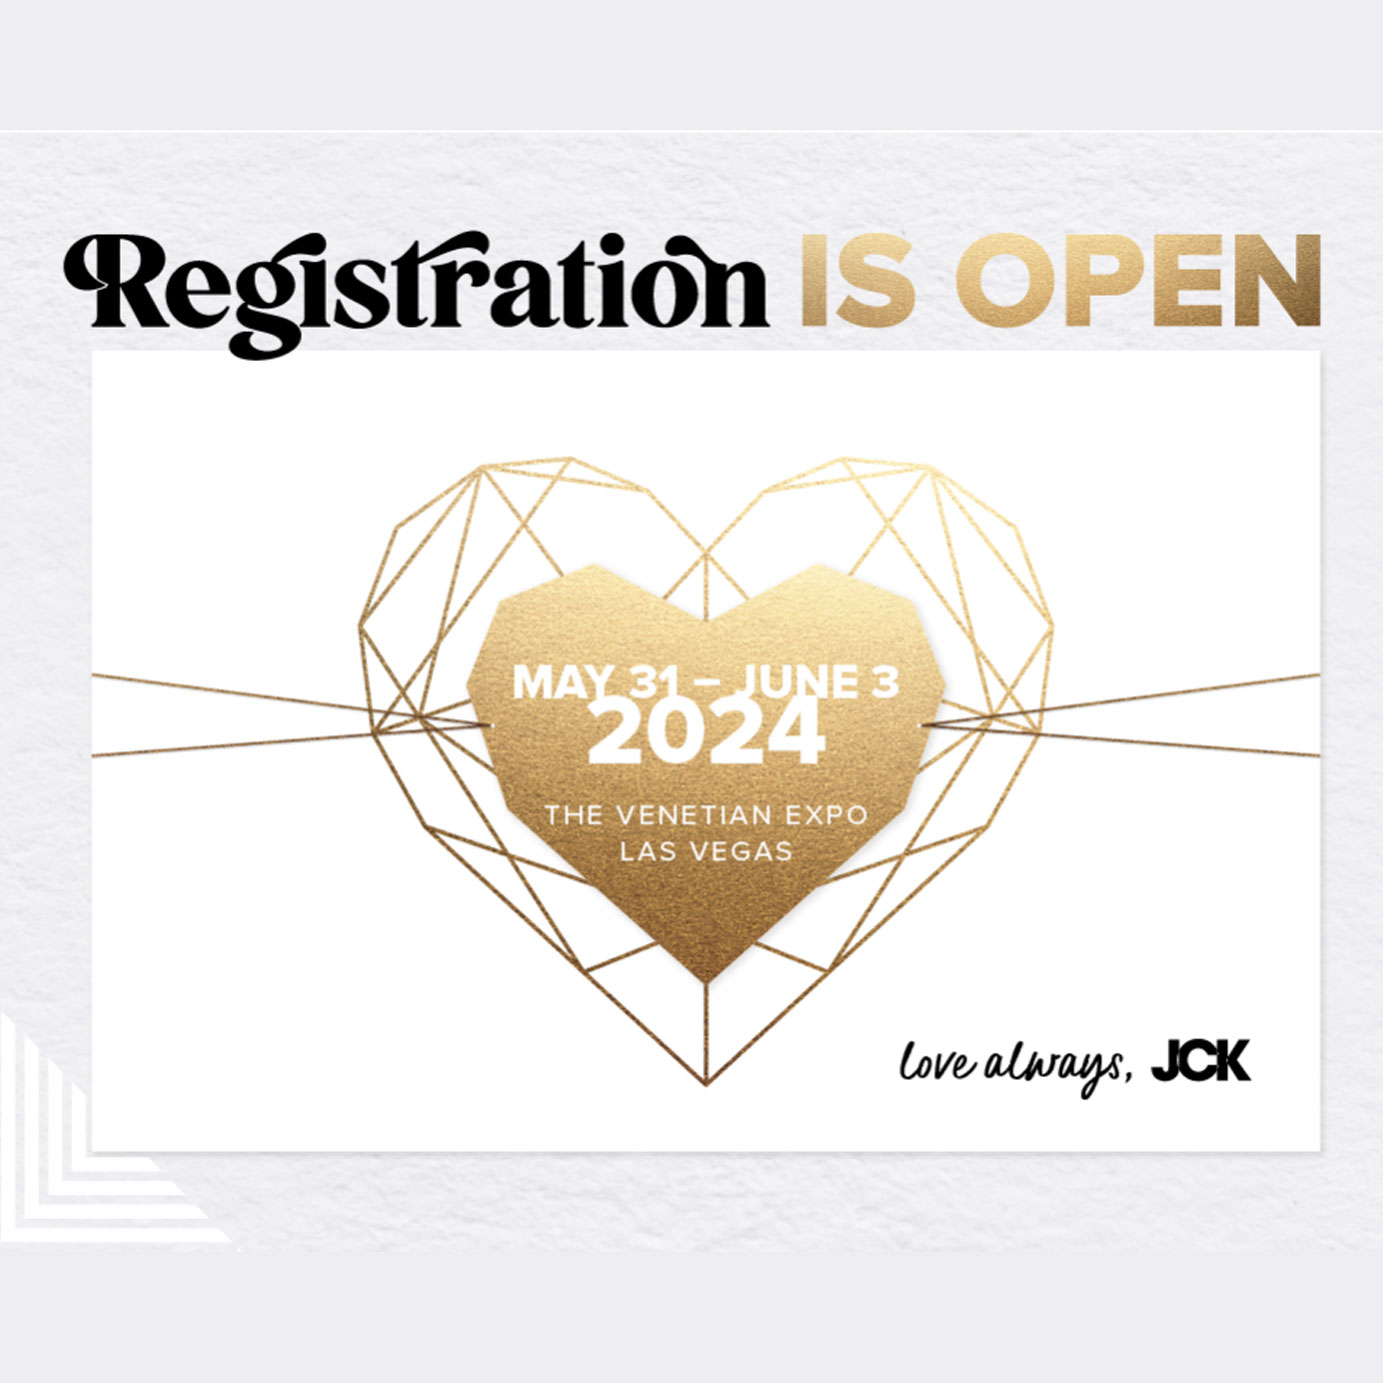 Registration Opens for JCK 2024 in Las Vegas